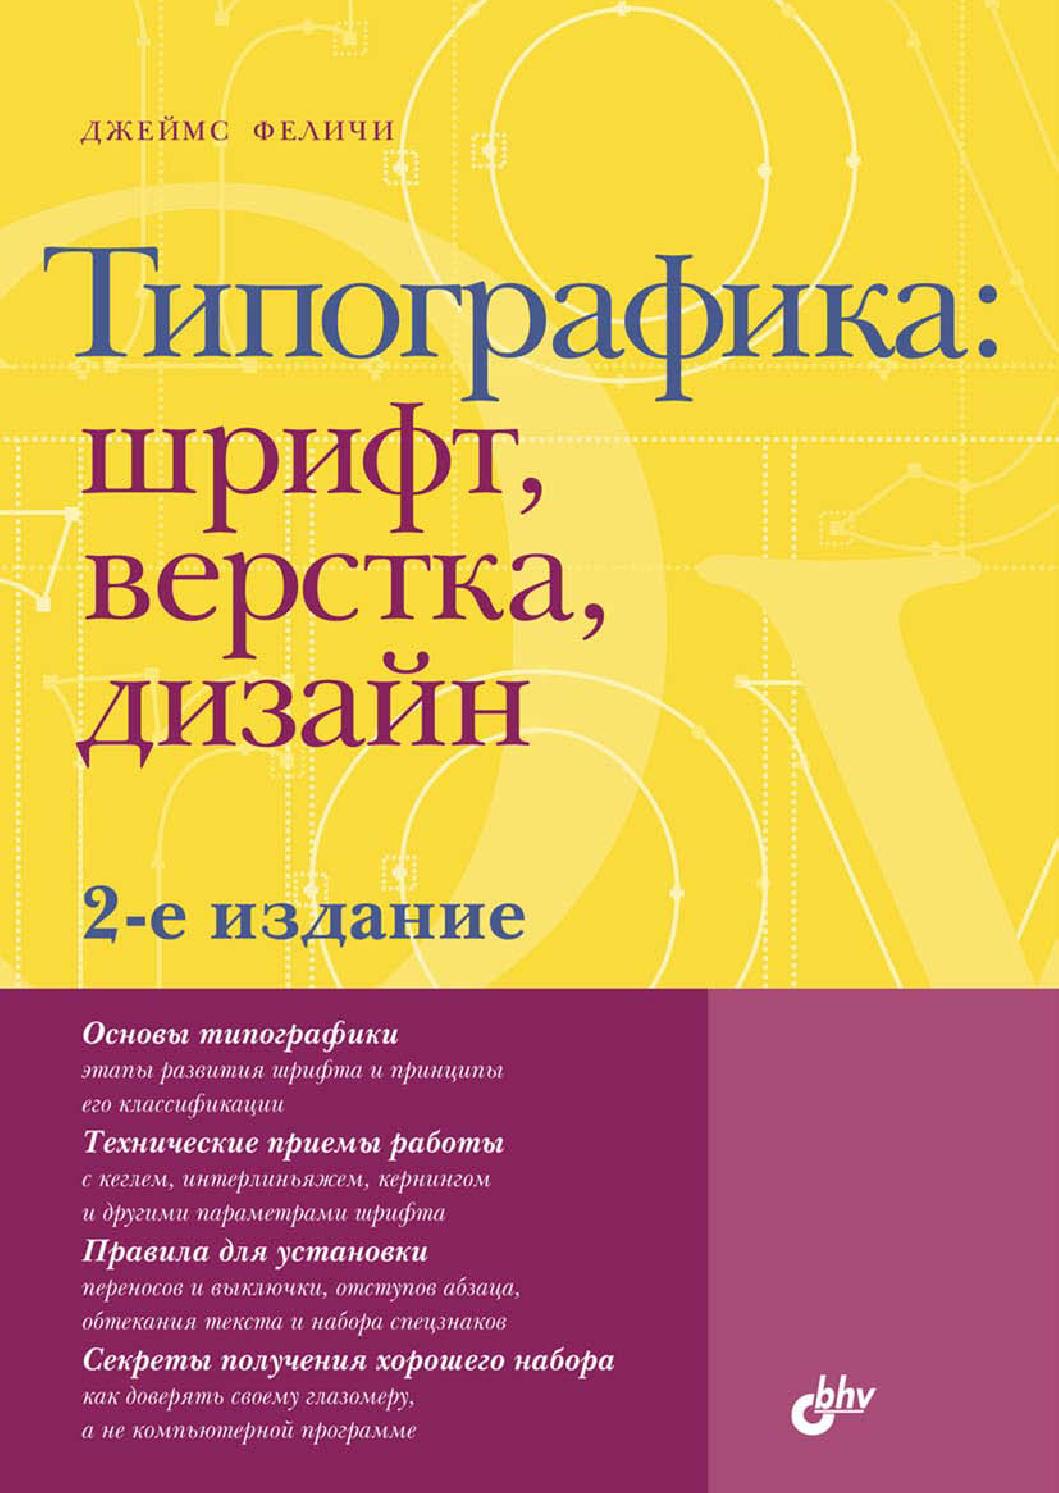 Типографика: шрифт, верстка, дизайн. 2-е издание, 2014, Джеймс Феличи